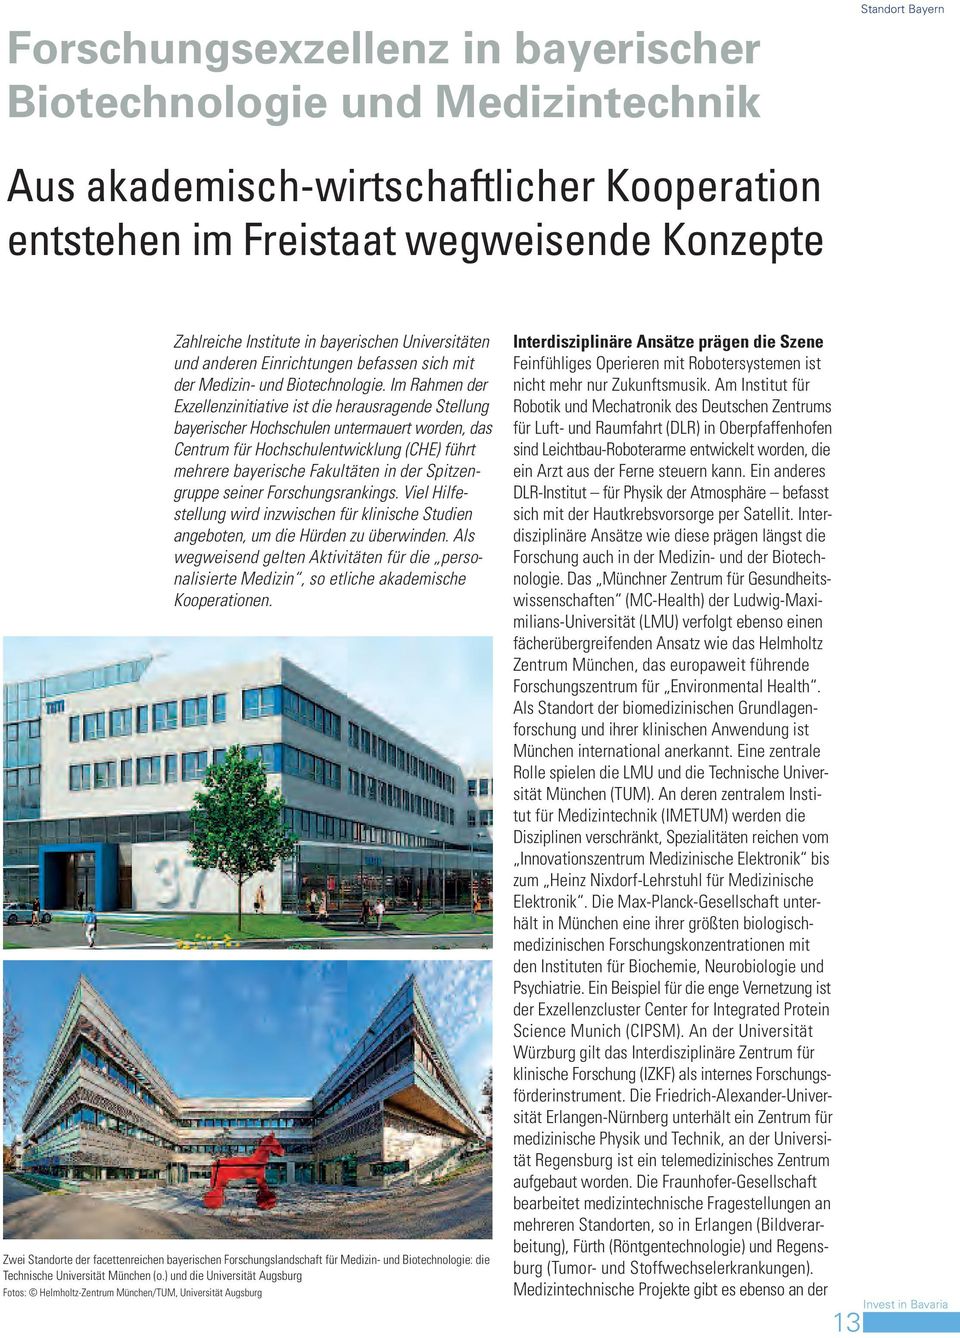 Im Rahmen der Exzellenzinitiative ist die herausragende Stellung bayerischer Hochschulen untermauert worden, das Centrum für Hochschulentwicklung (CHE) führt mehrere bayerische Fakultäten in der